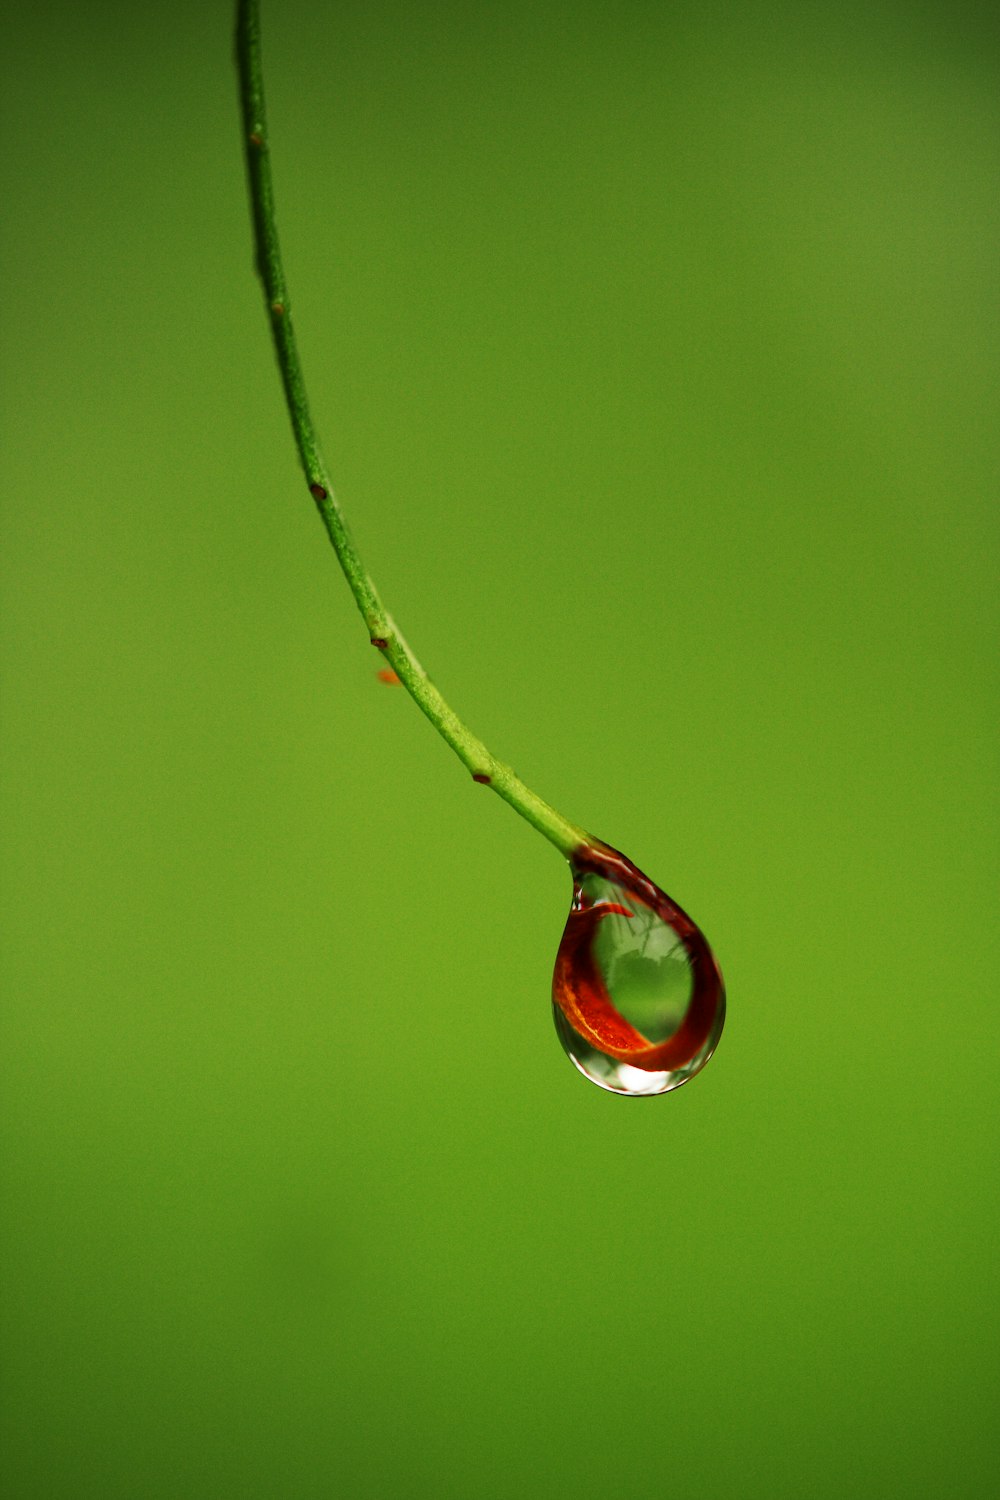 caule de planta vermelho e verde com gotículas de água